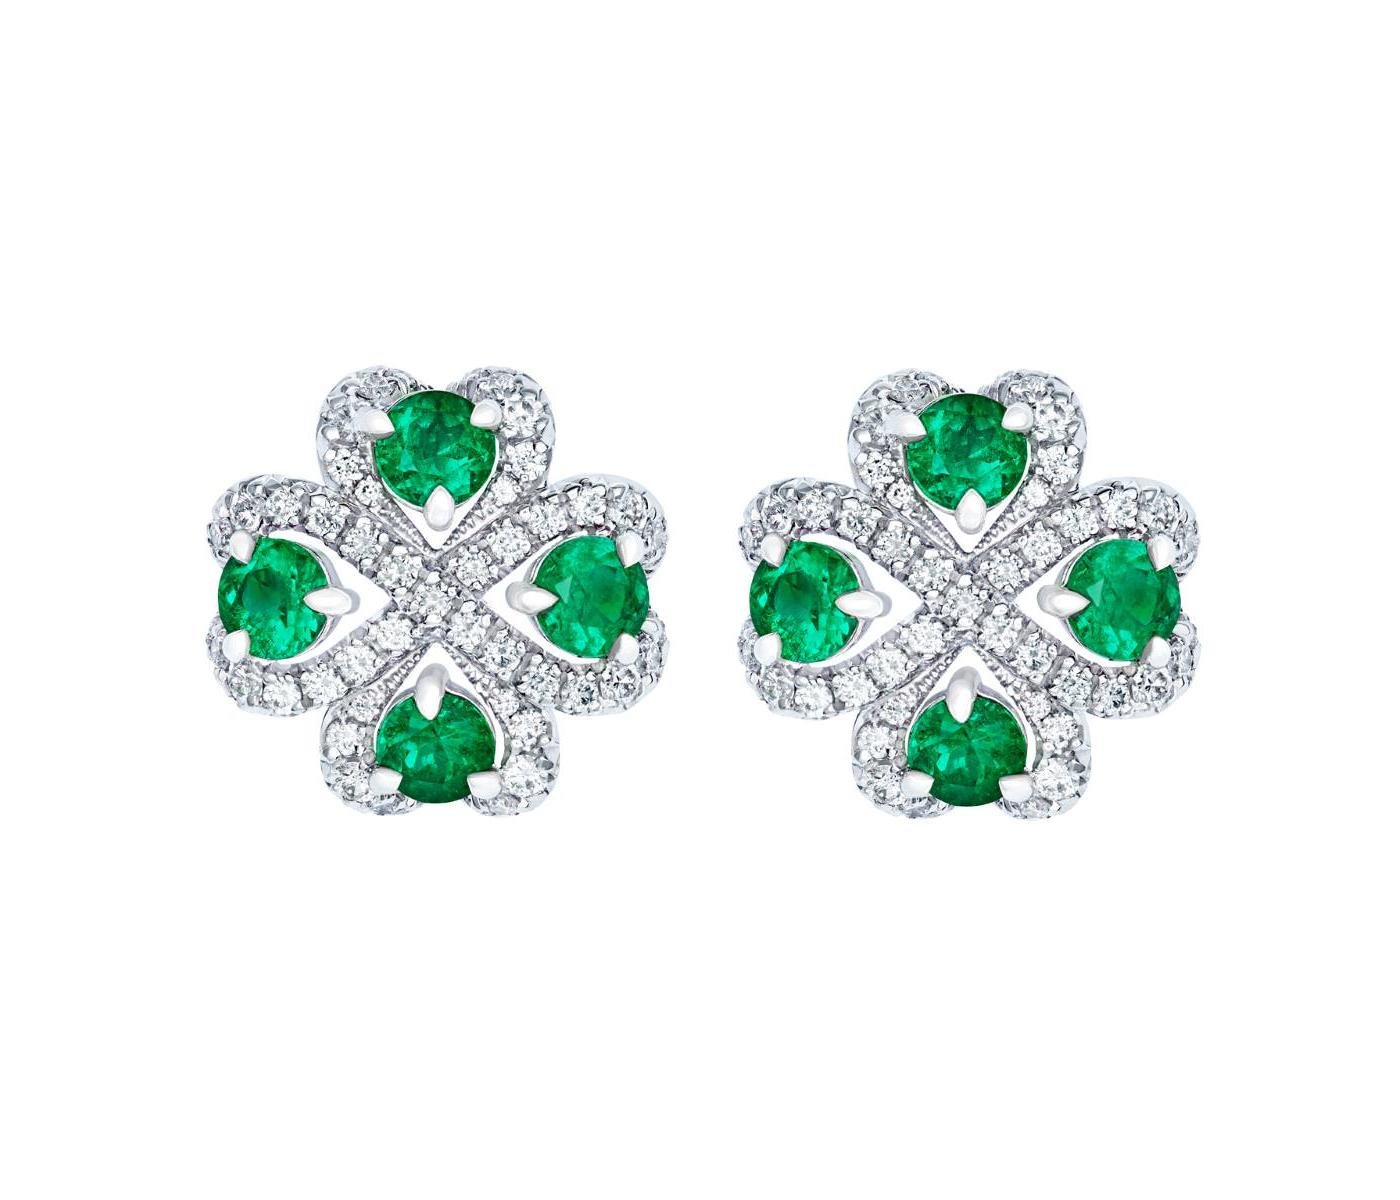 Earrings by Fabergé